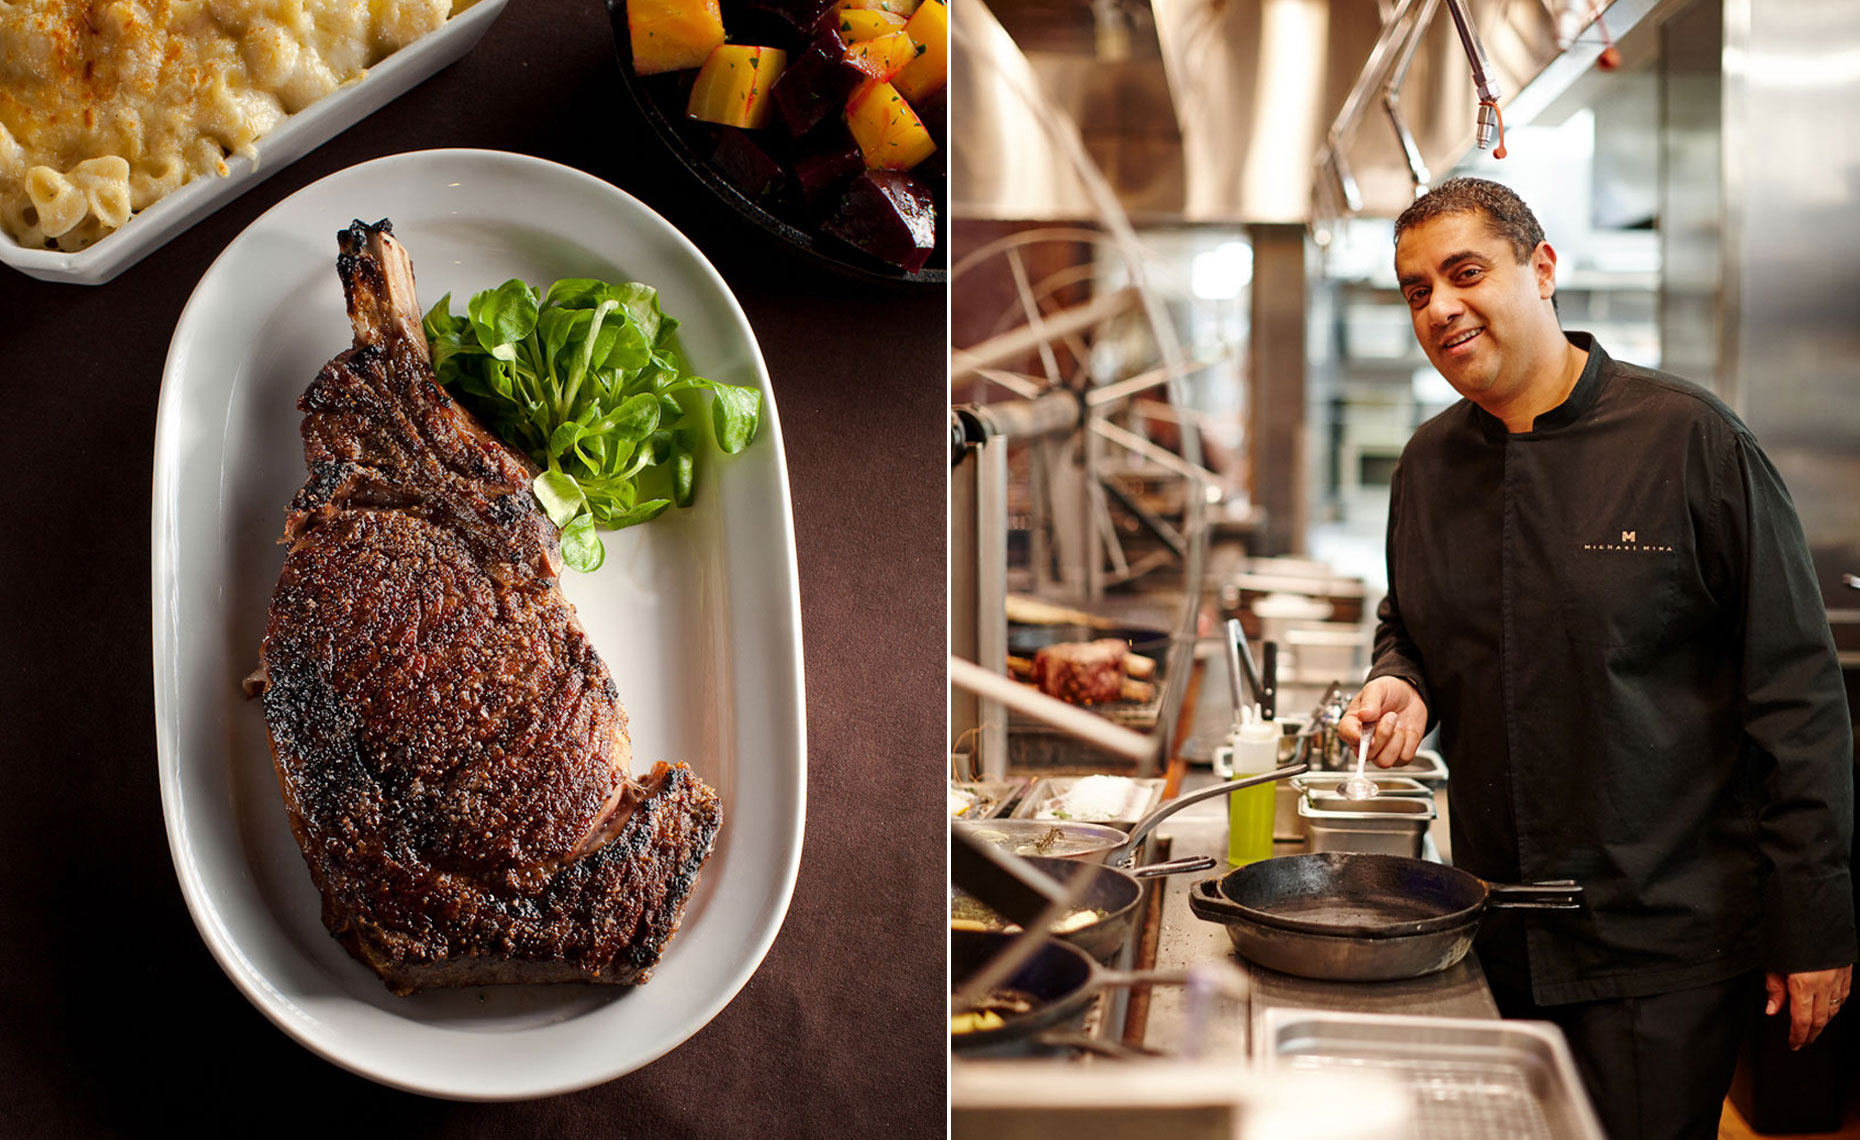 jeff-green-chef-in-kitchen-steak-entree